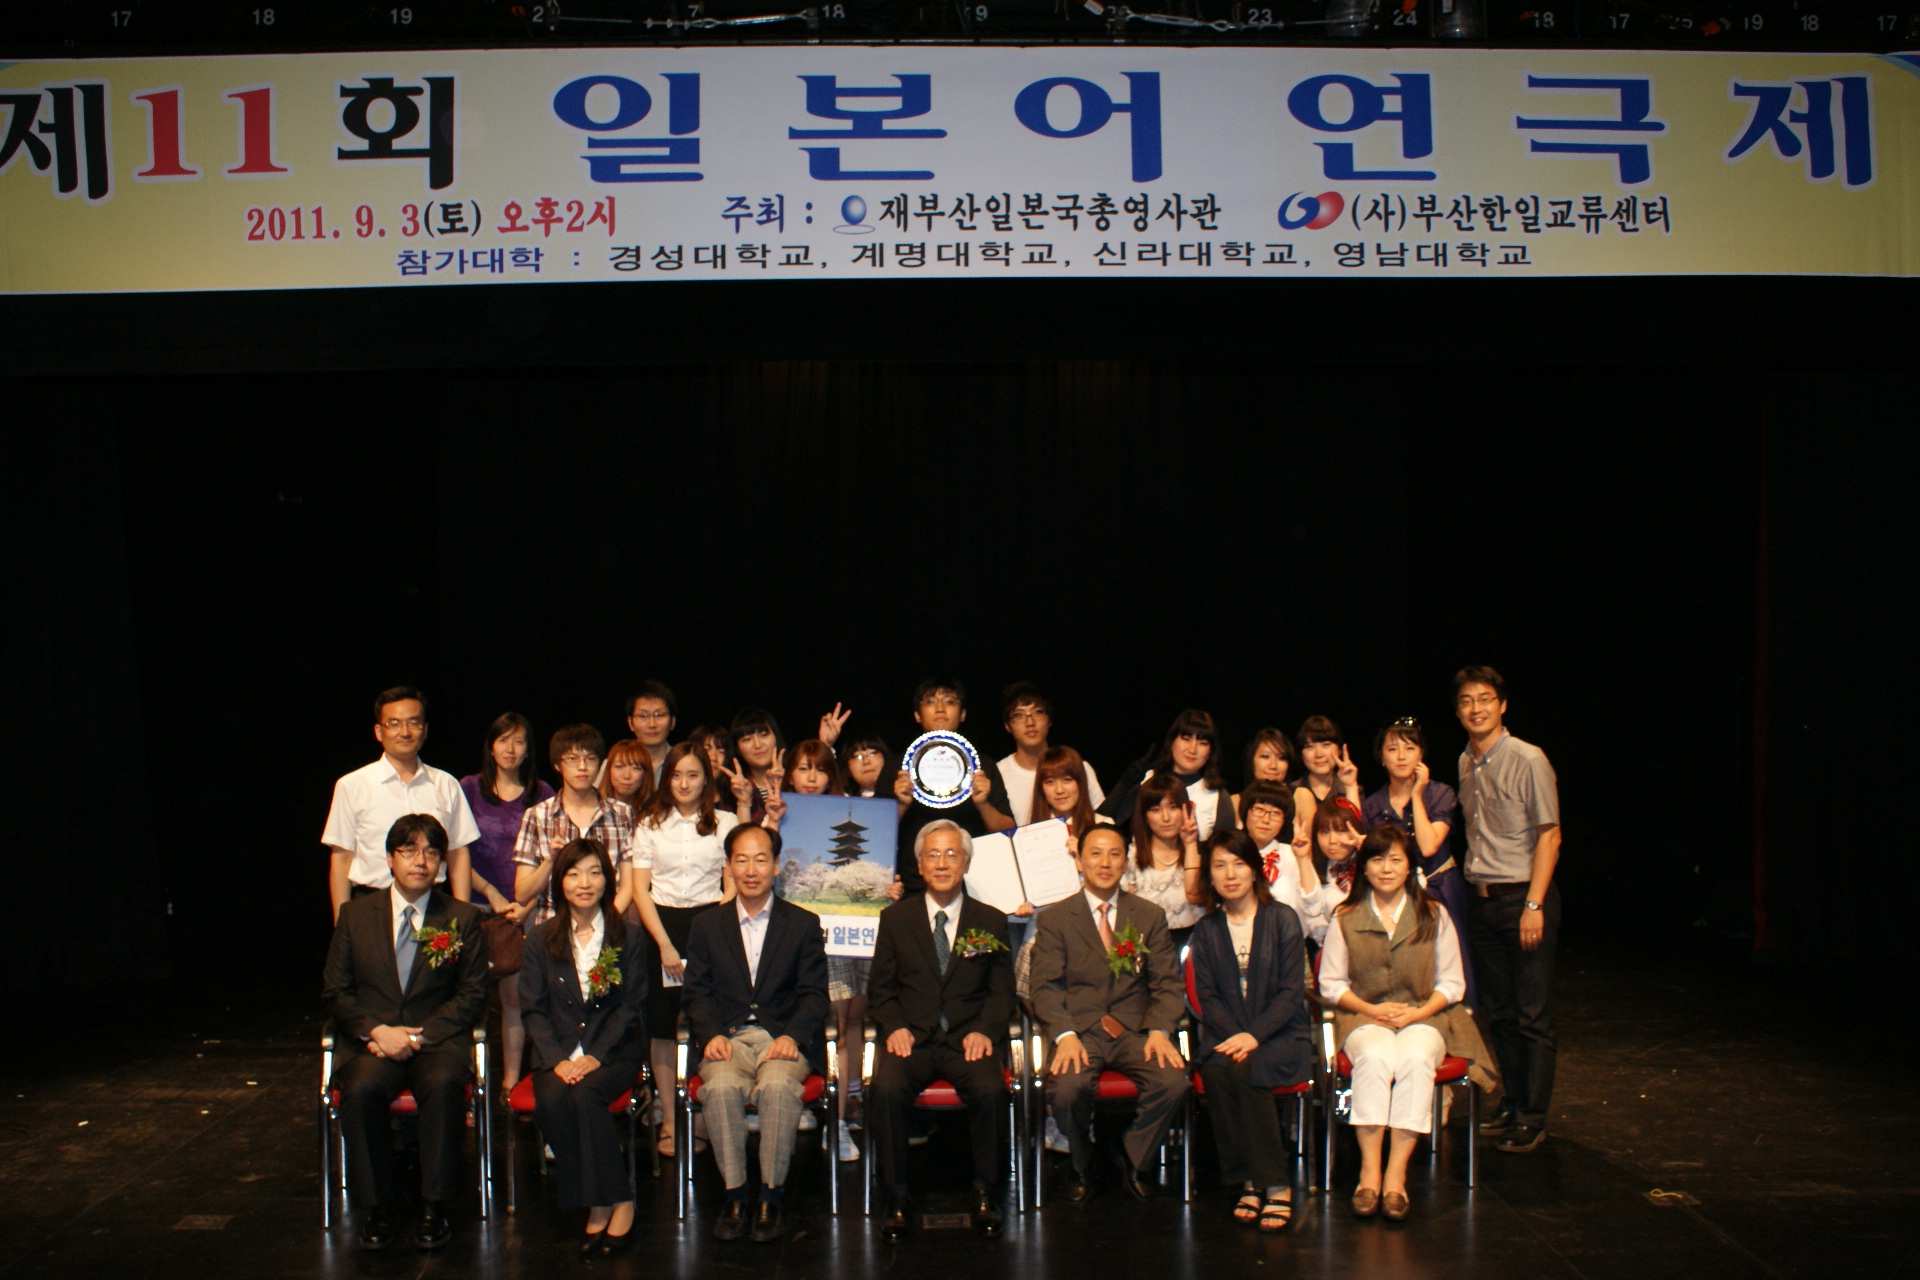 재부산일본국총영사관 주최 원어연극대회